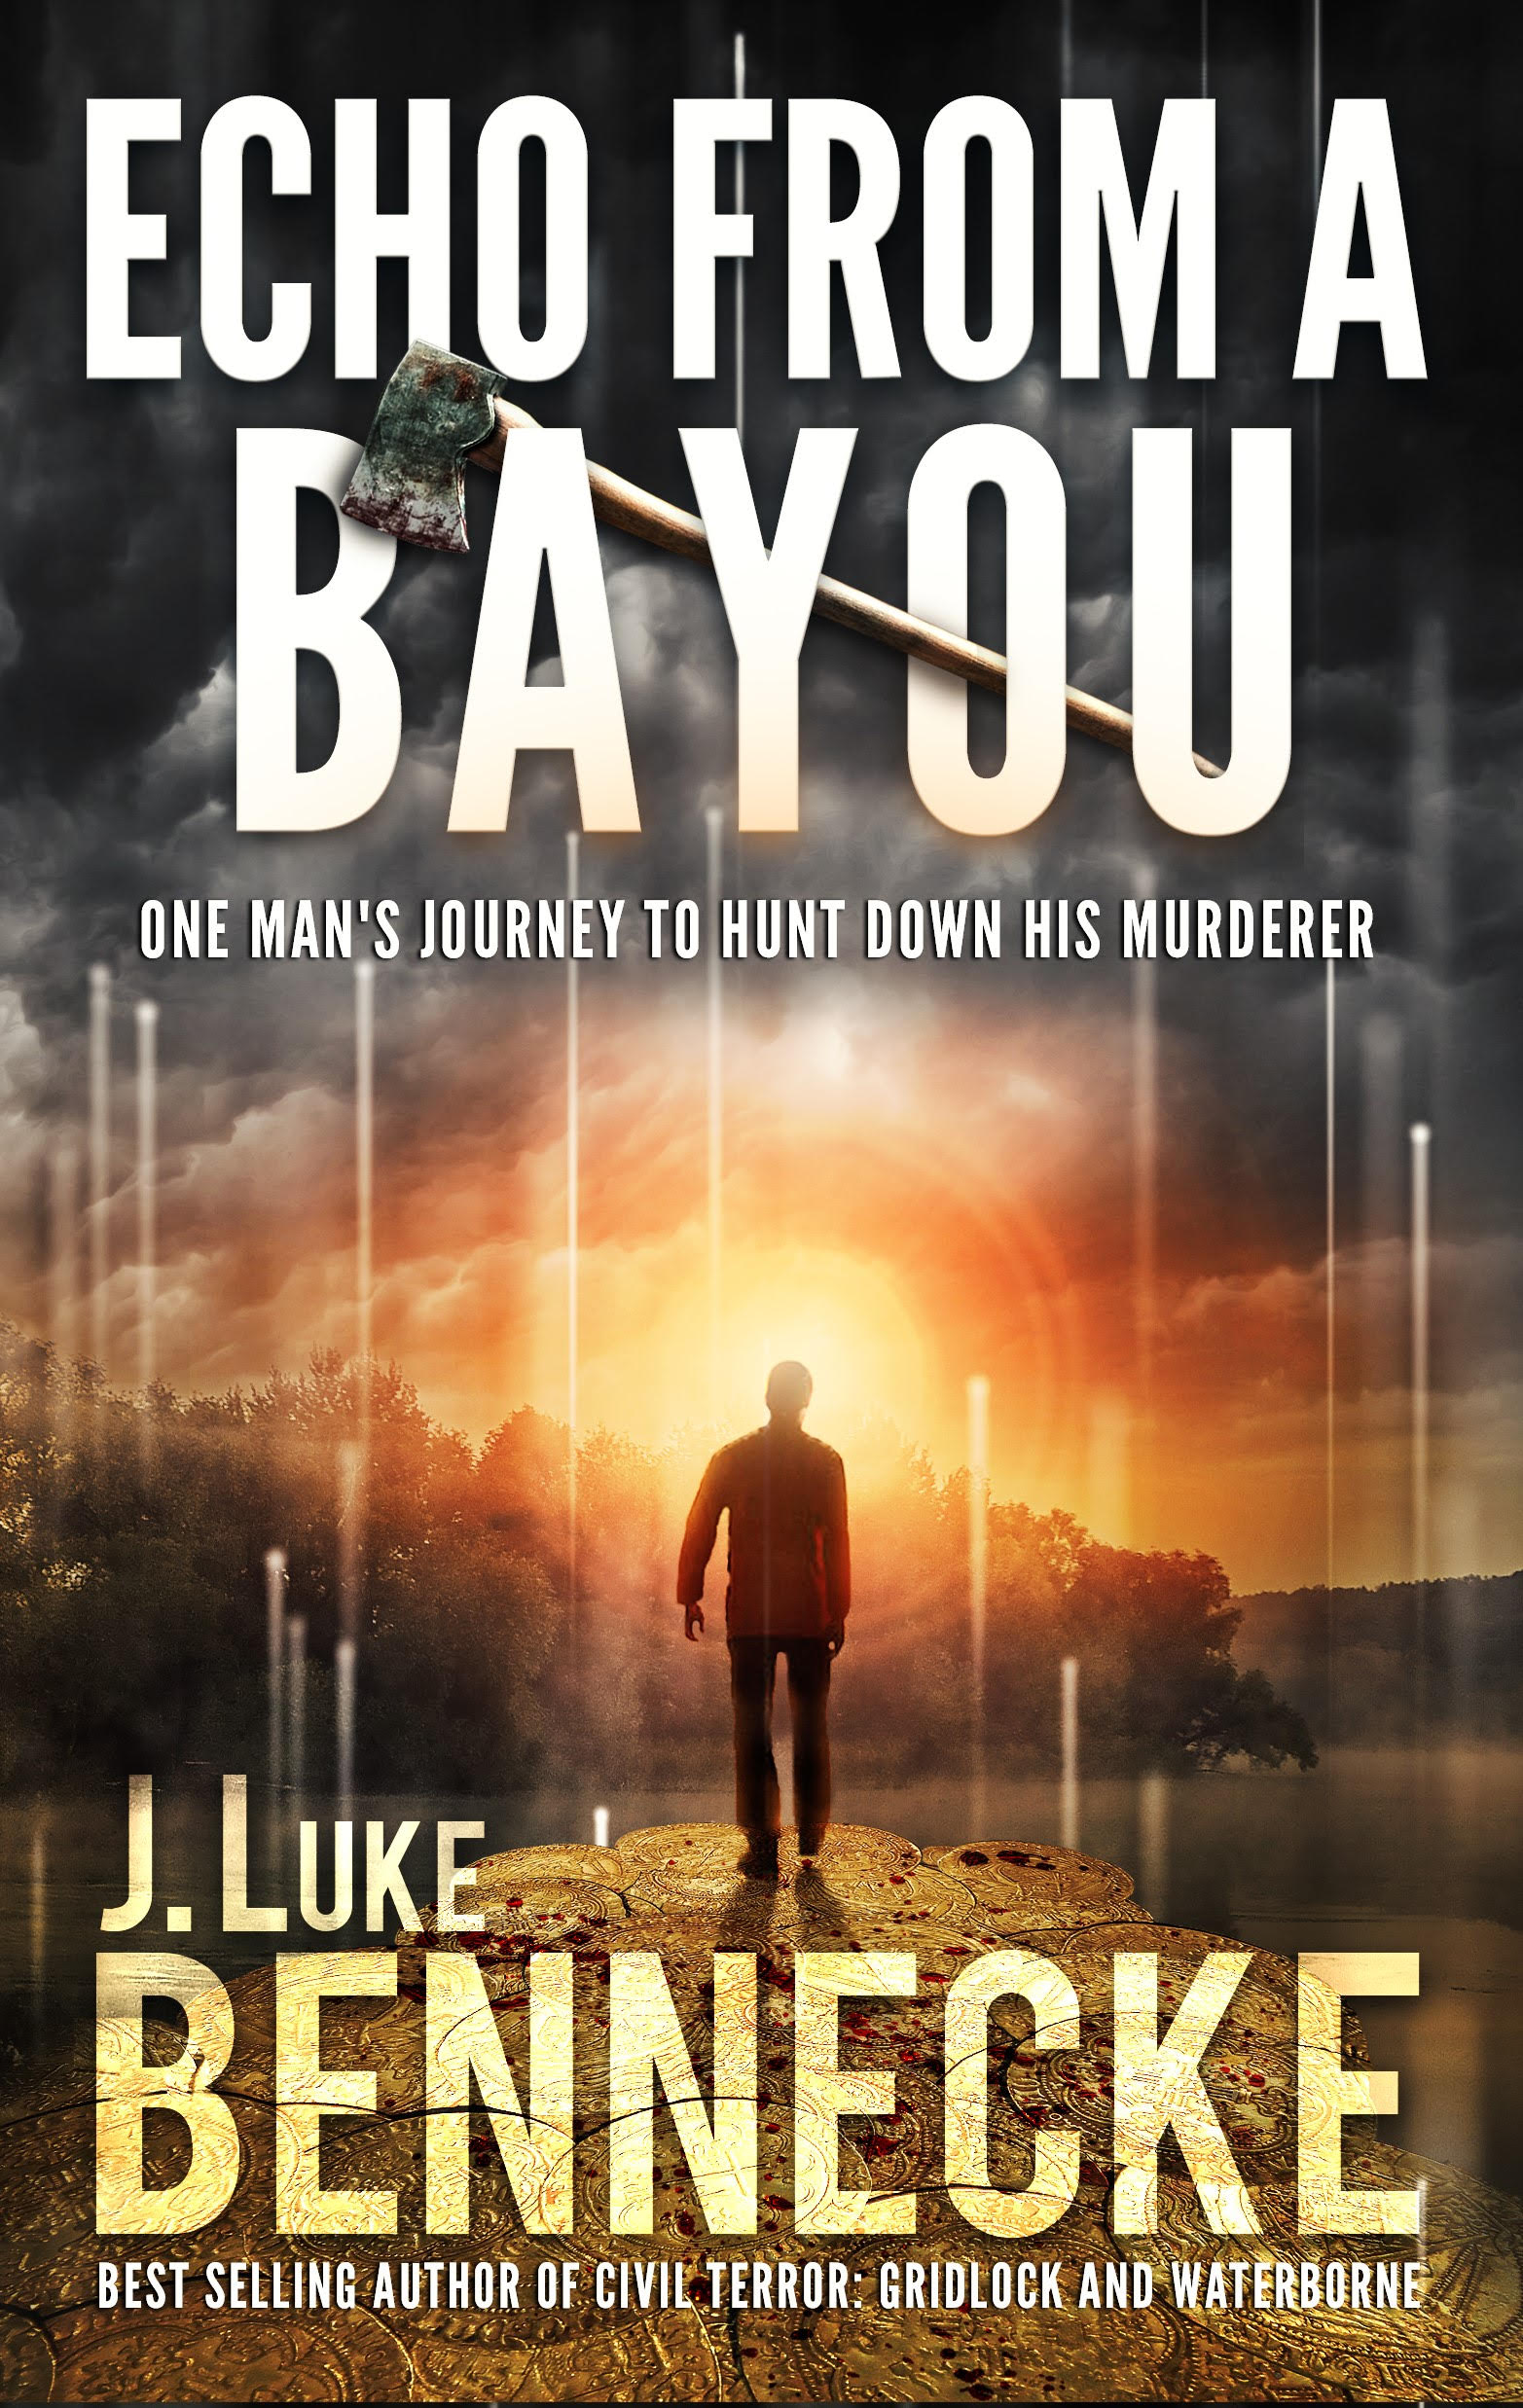 Echo From a Bayou by J. Luke Bennecke